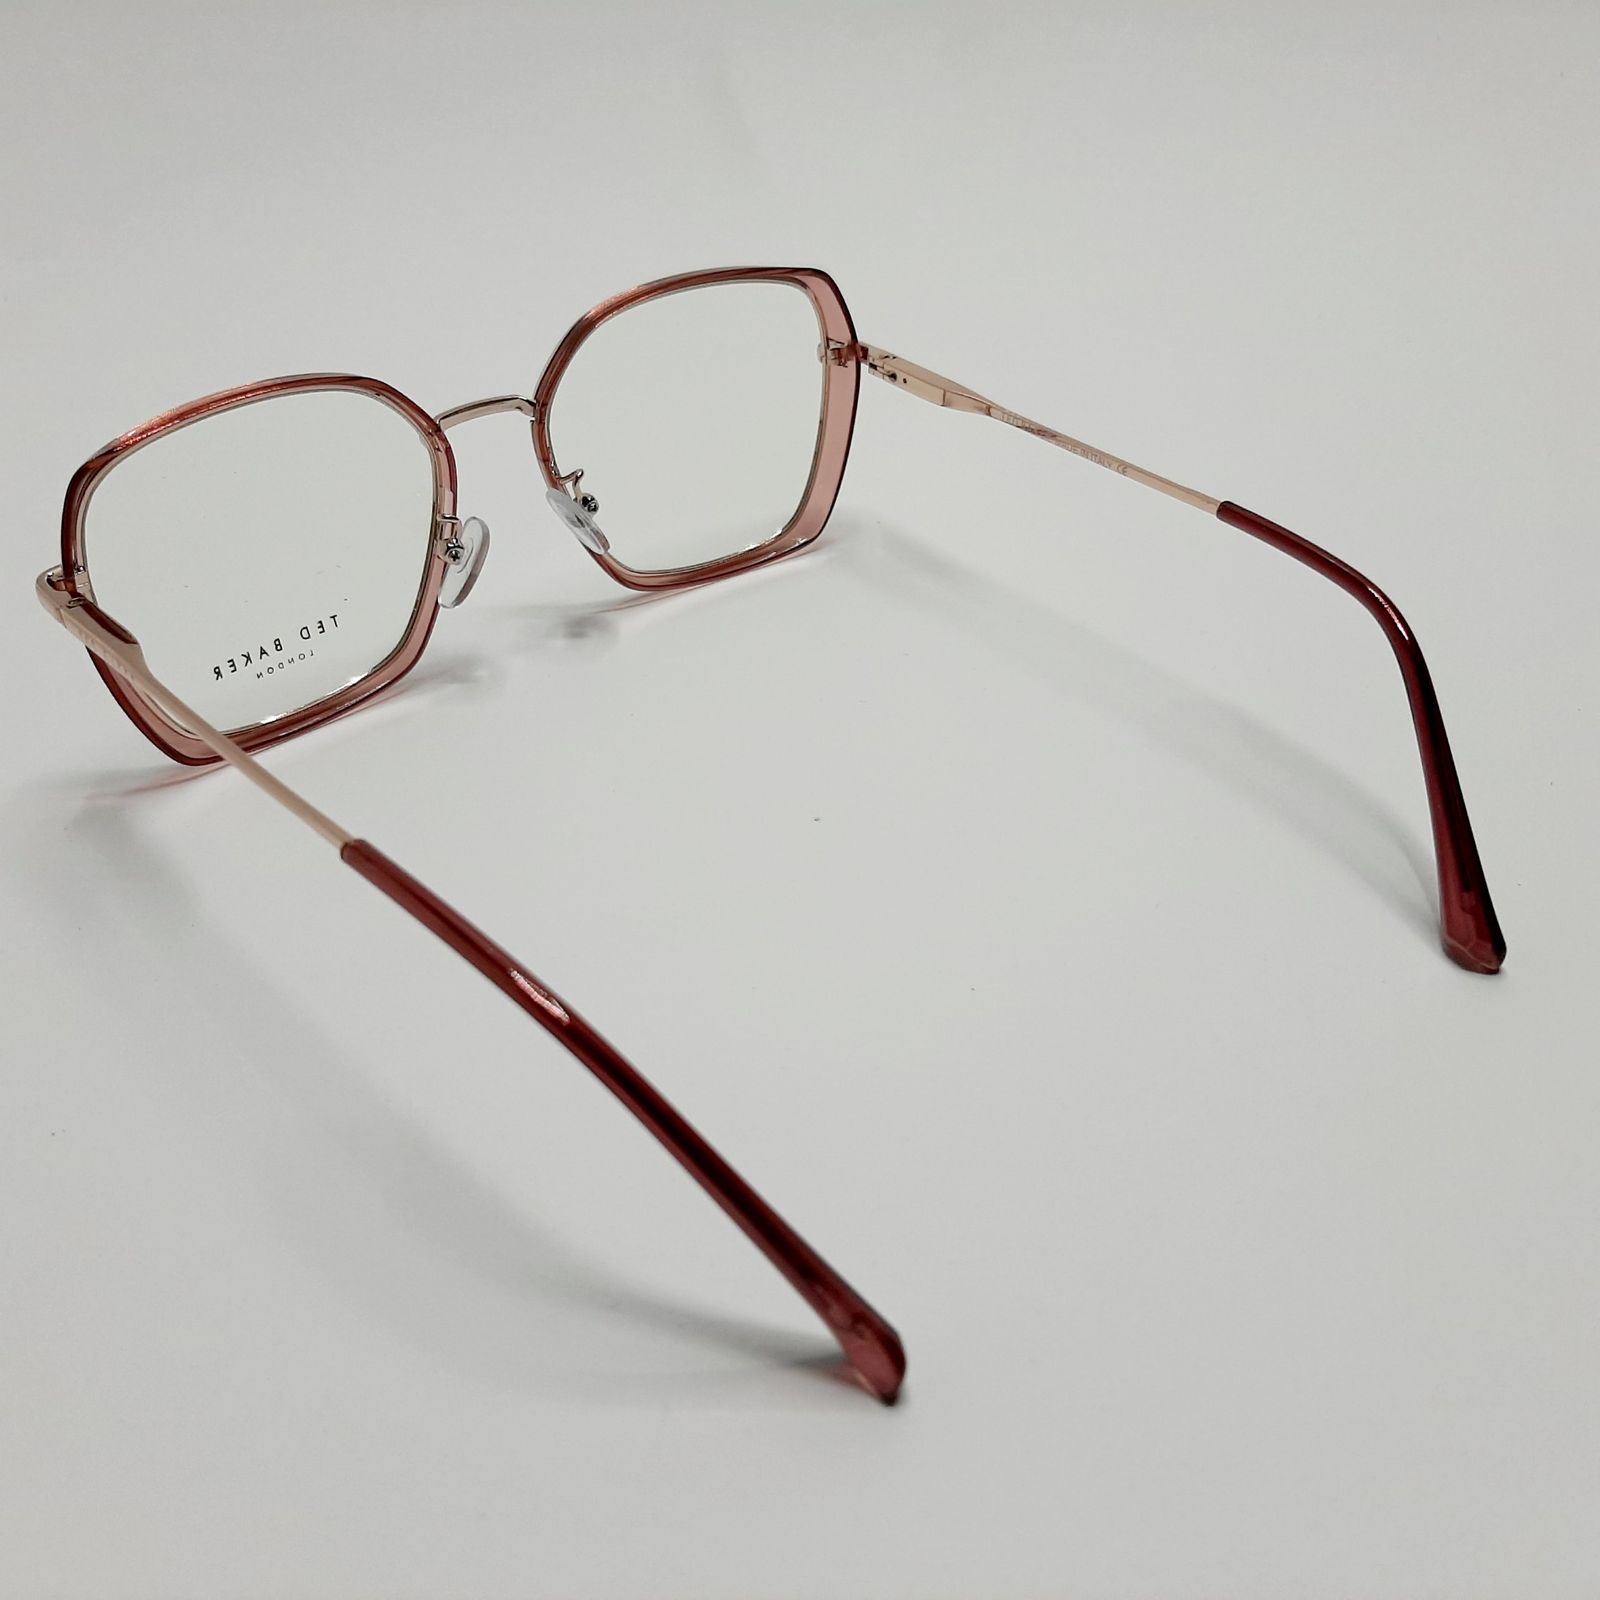 فریم عینک طبی تد بیکر مدل 95583c2 -  - 6